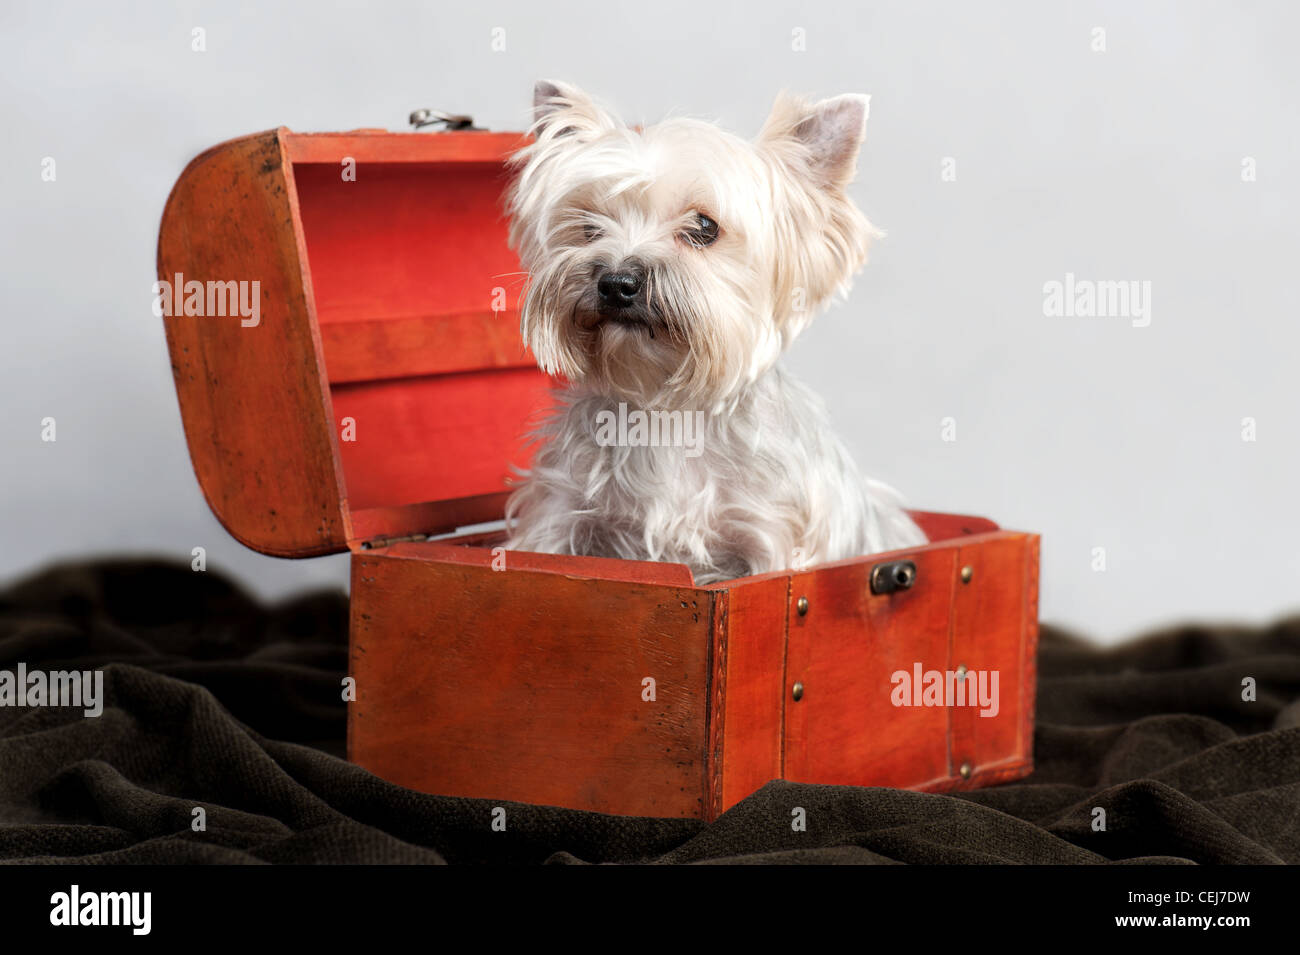 Yorkshire Terrier dans une boîte en bois, sur fond gris Banque D'Images